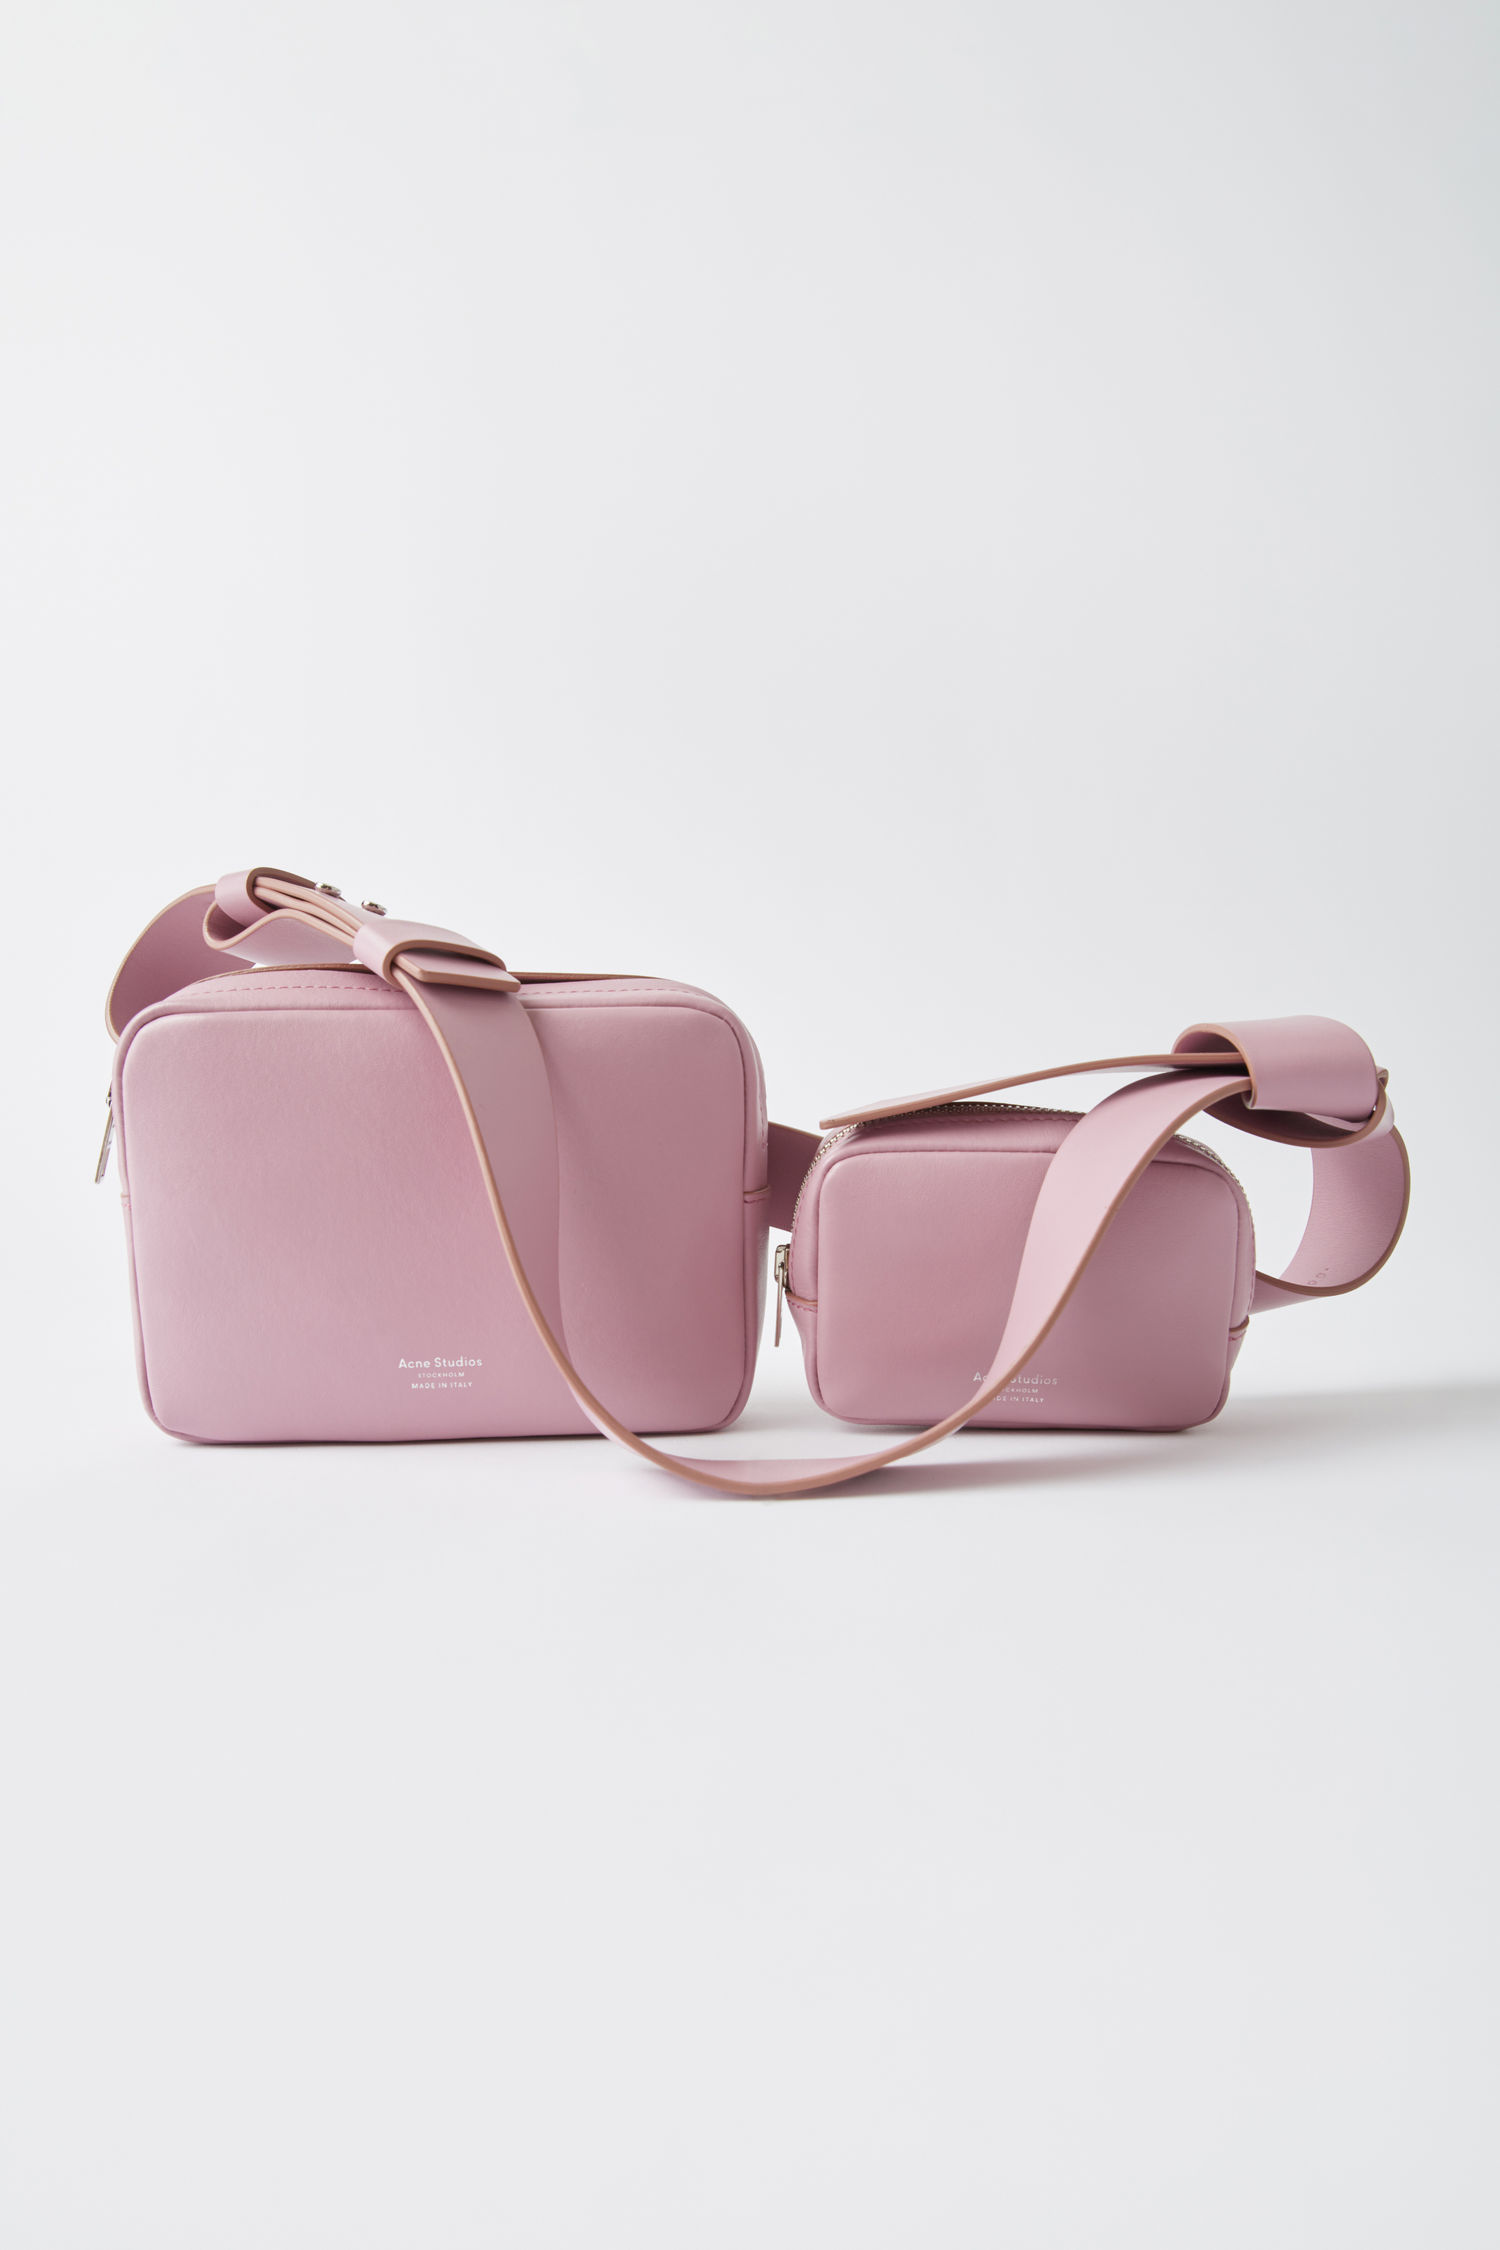 Acne Studios - Leather belt bag Old pink